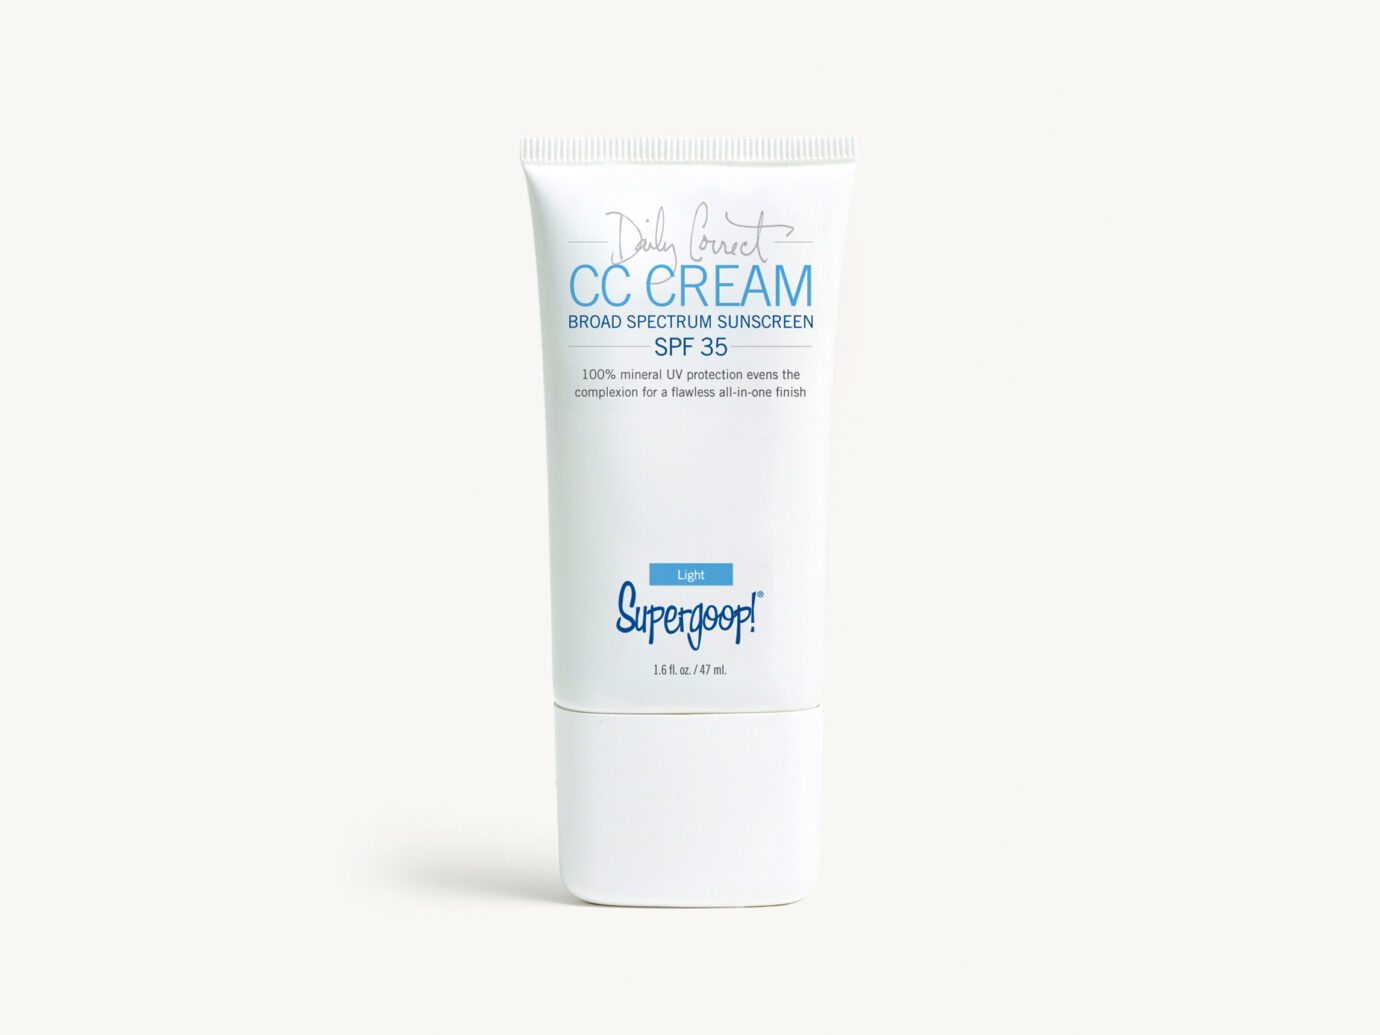 Supergoop CC cream SPF 35